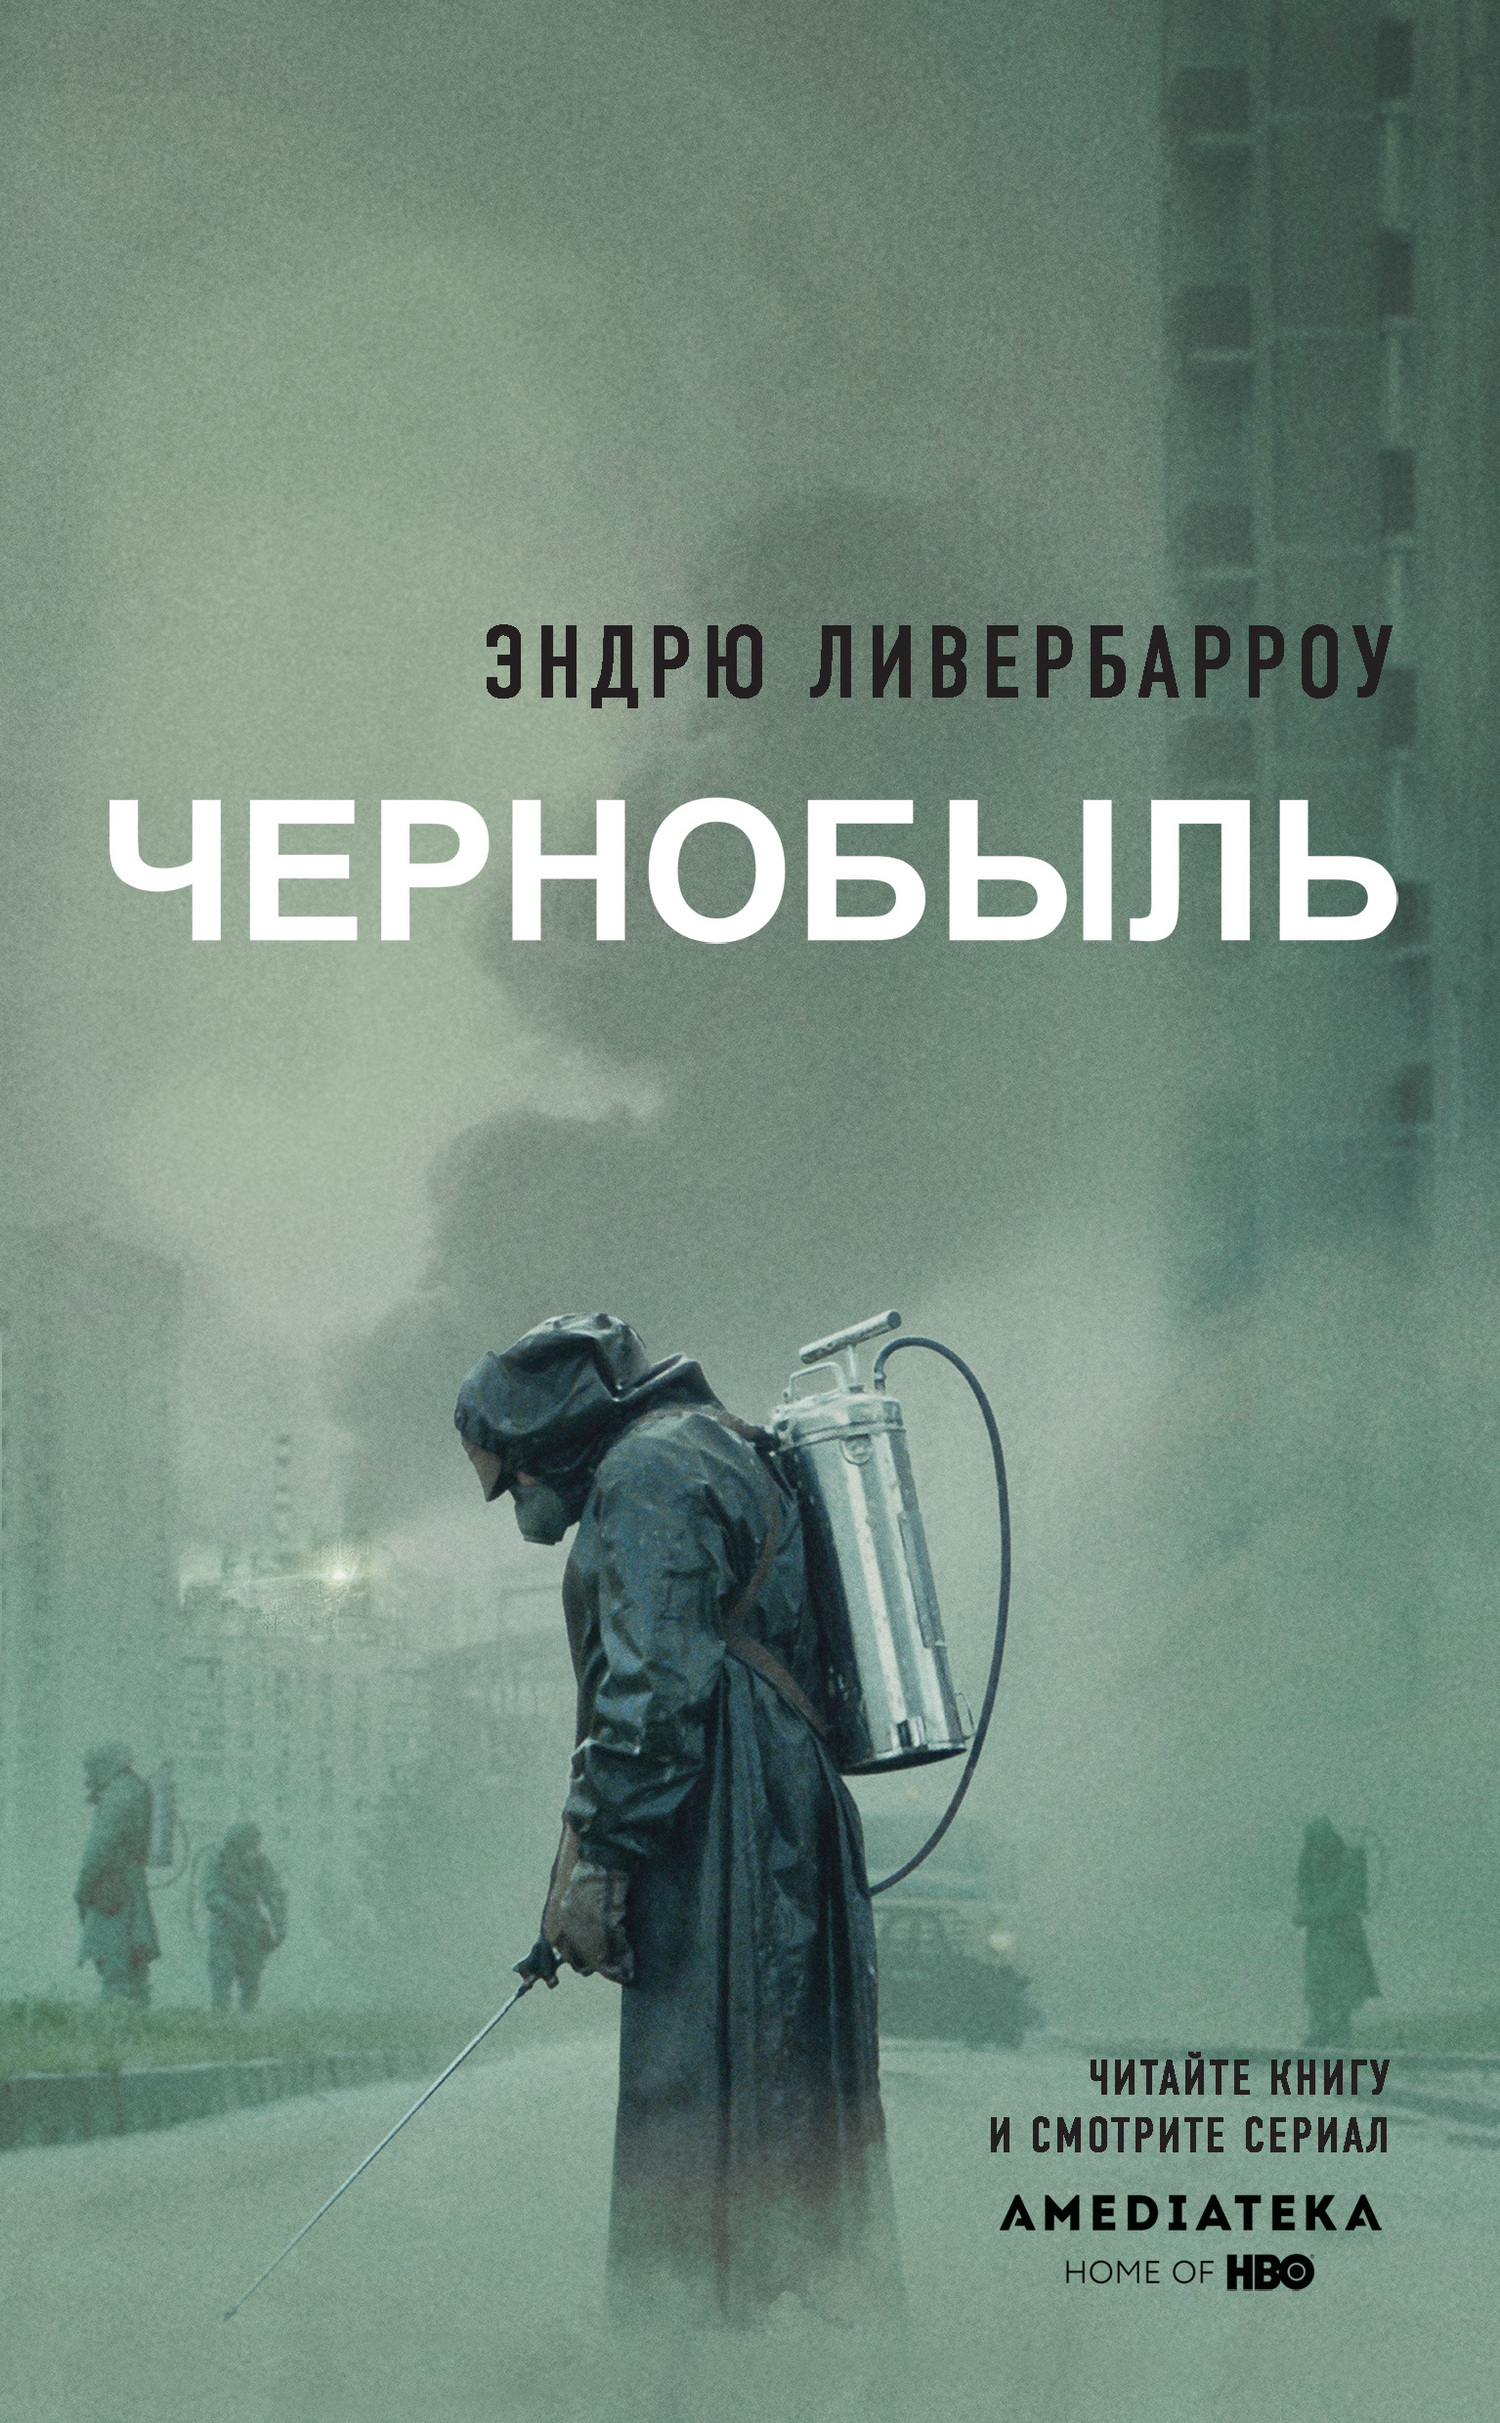 Ливербарроу Эндрю - Чернобыль 01:23:40 скачать бесплатно